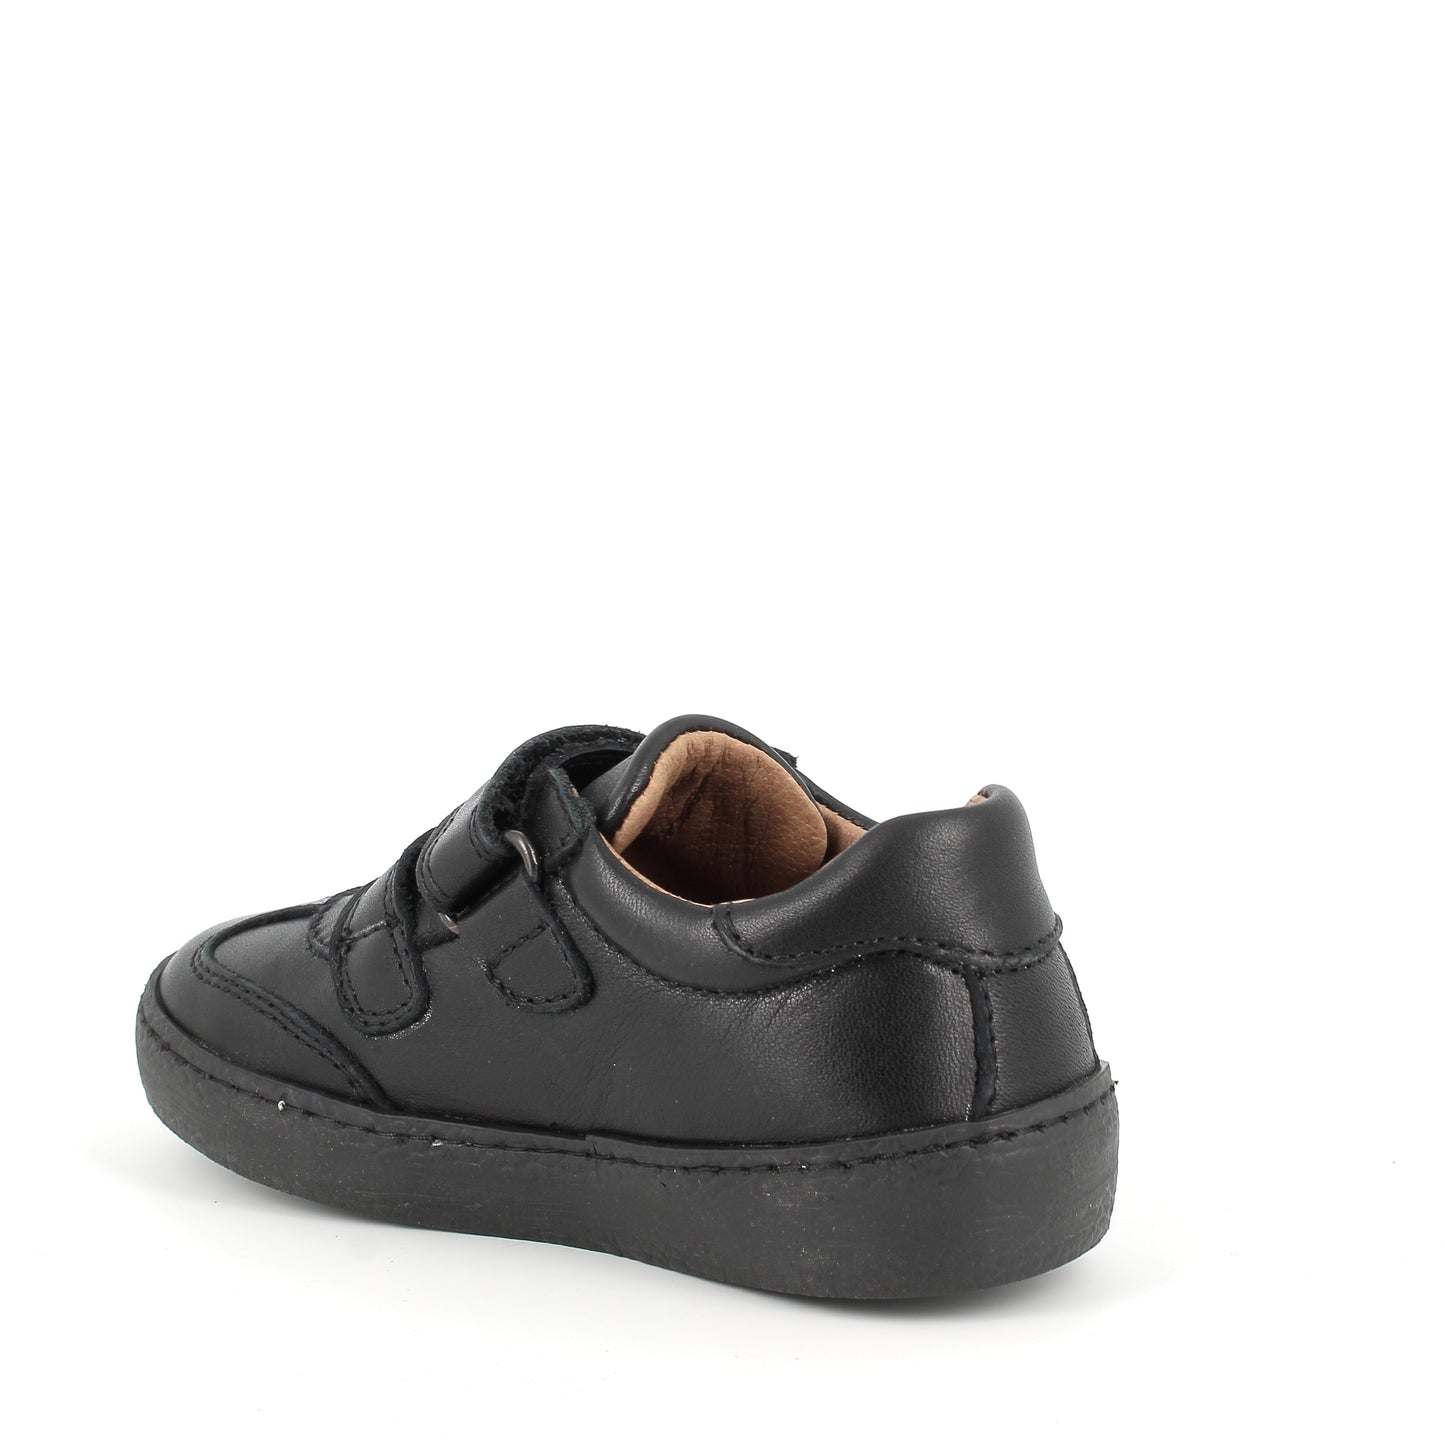 Primigi Black Velcro "Diamond" Boys School Shoes